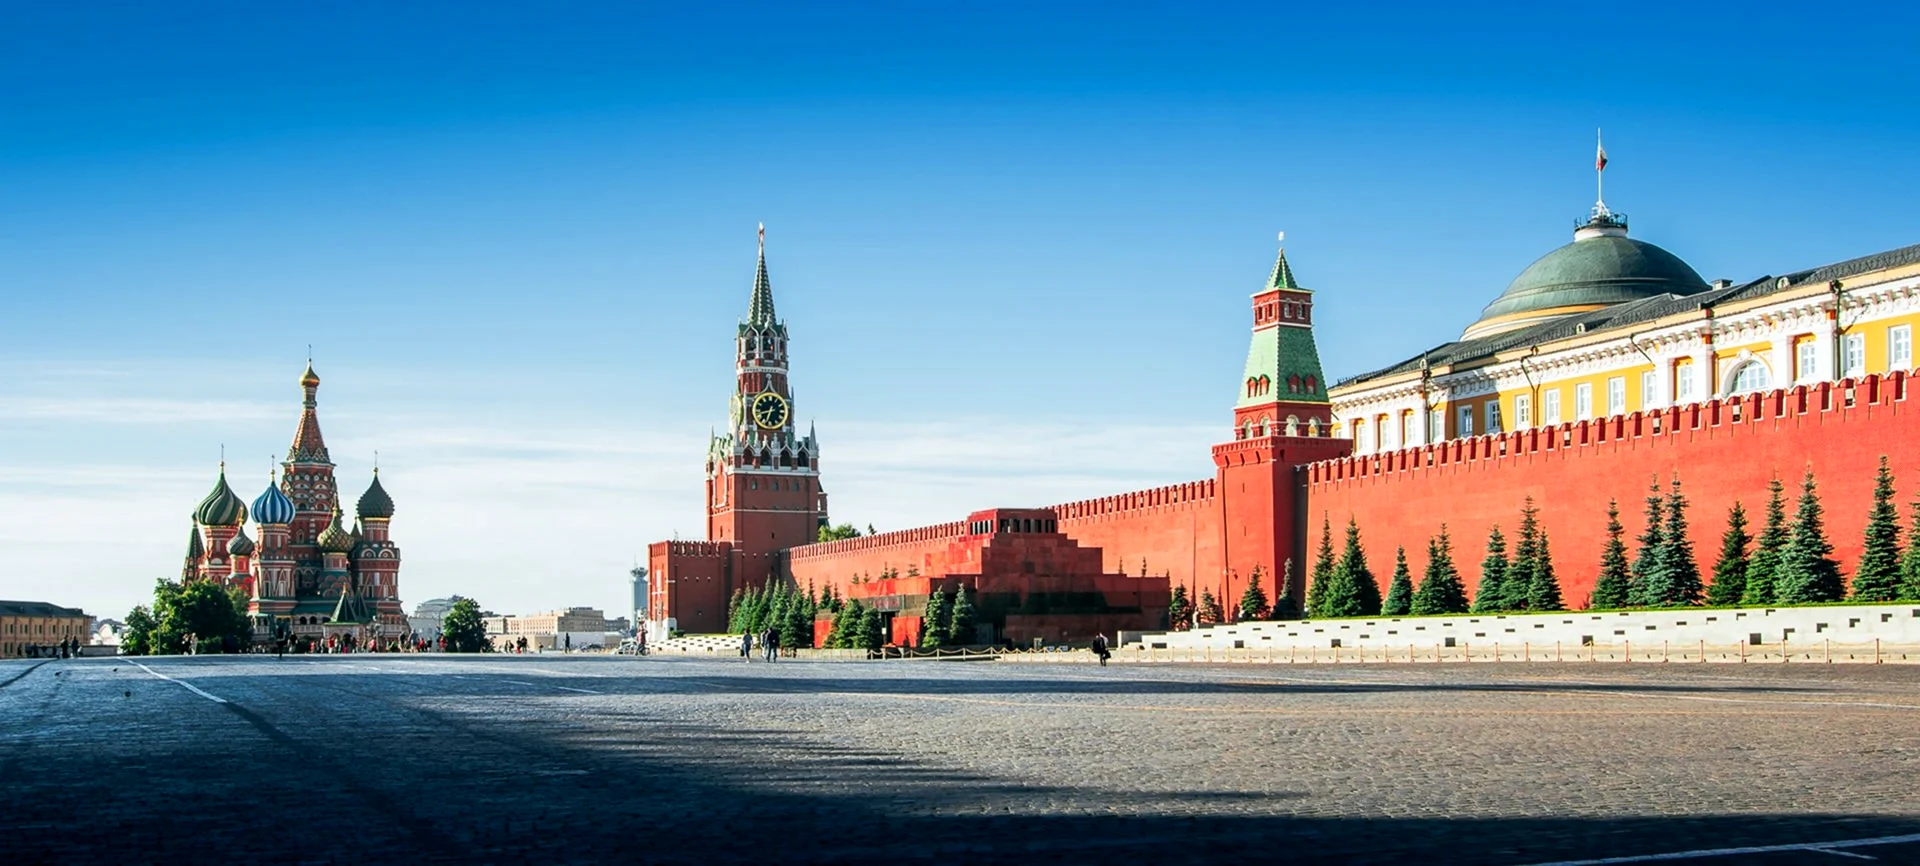 Спасская башня Московского Кремля панорама